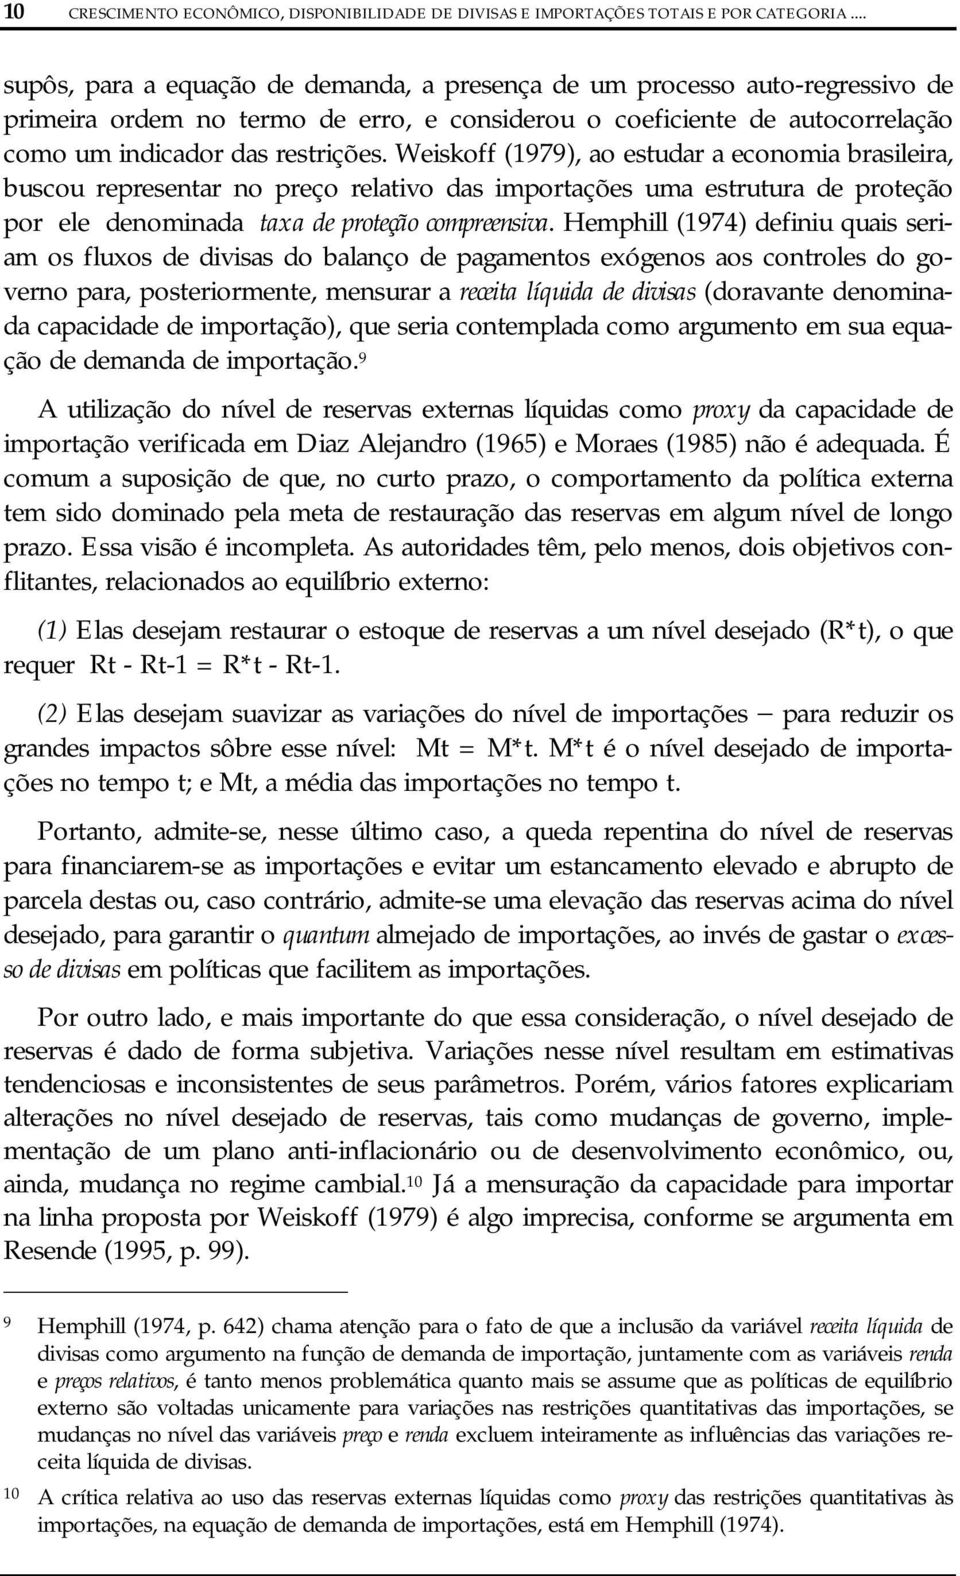 Weiskoff (1979), ao estudar a economia brasileira, buscou representar no preço relativo das importações uma estrutura de proteção por ele denominada taxa de proteção compreensiva.